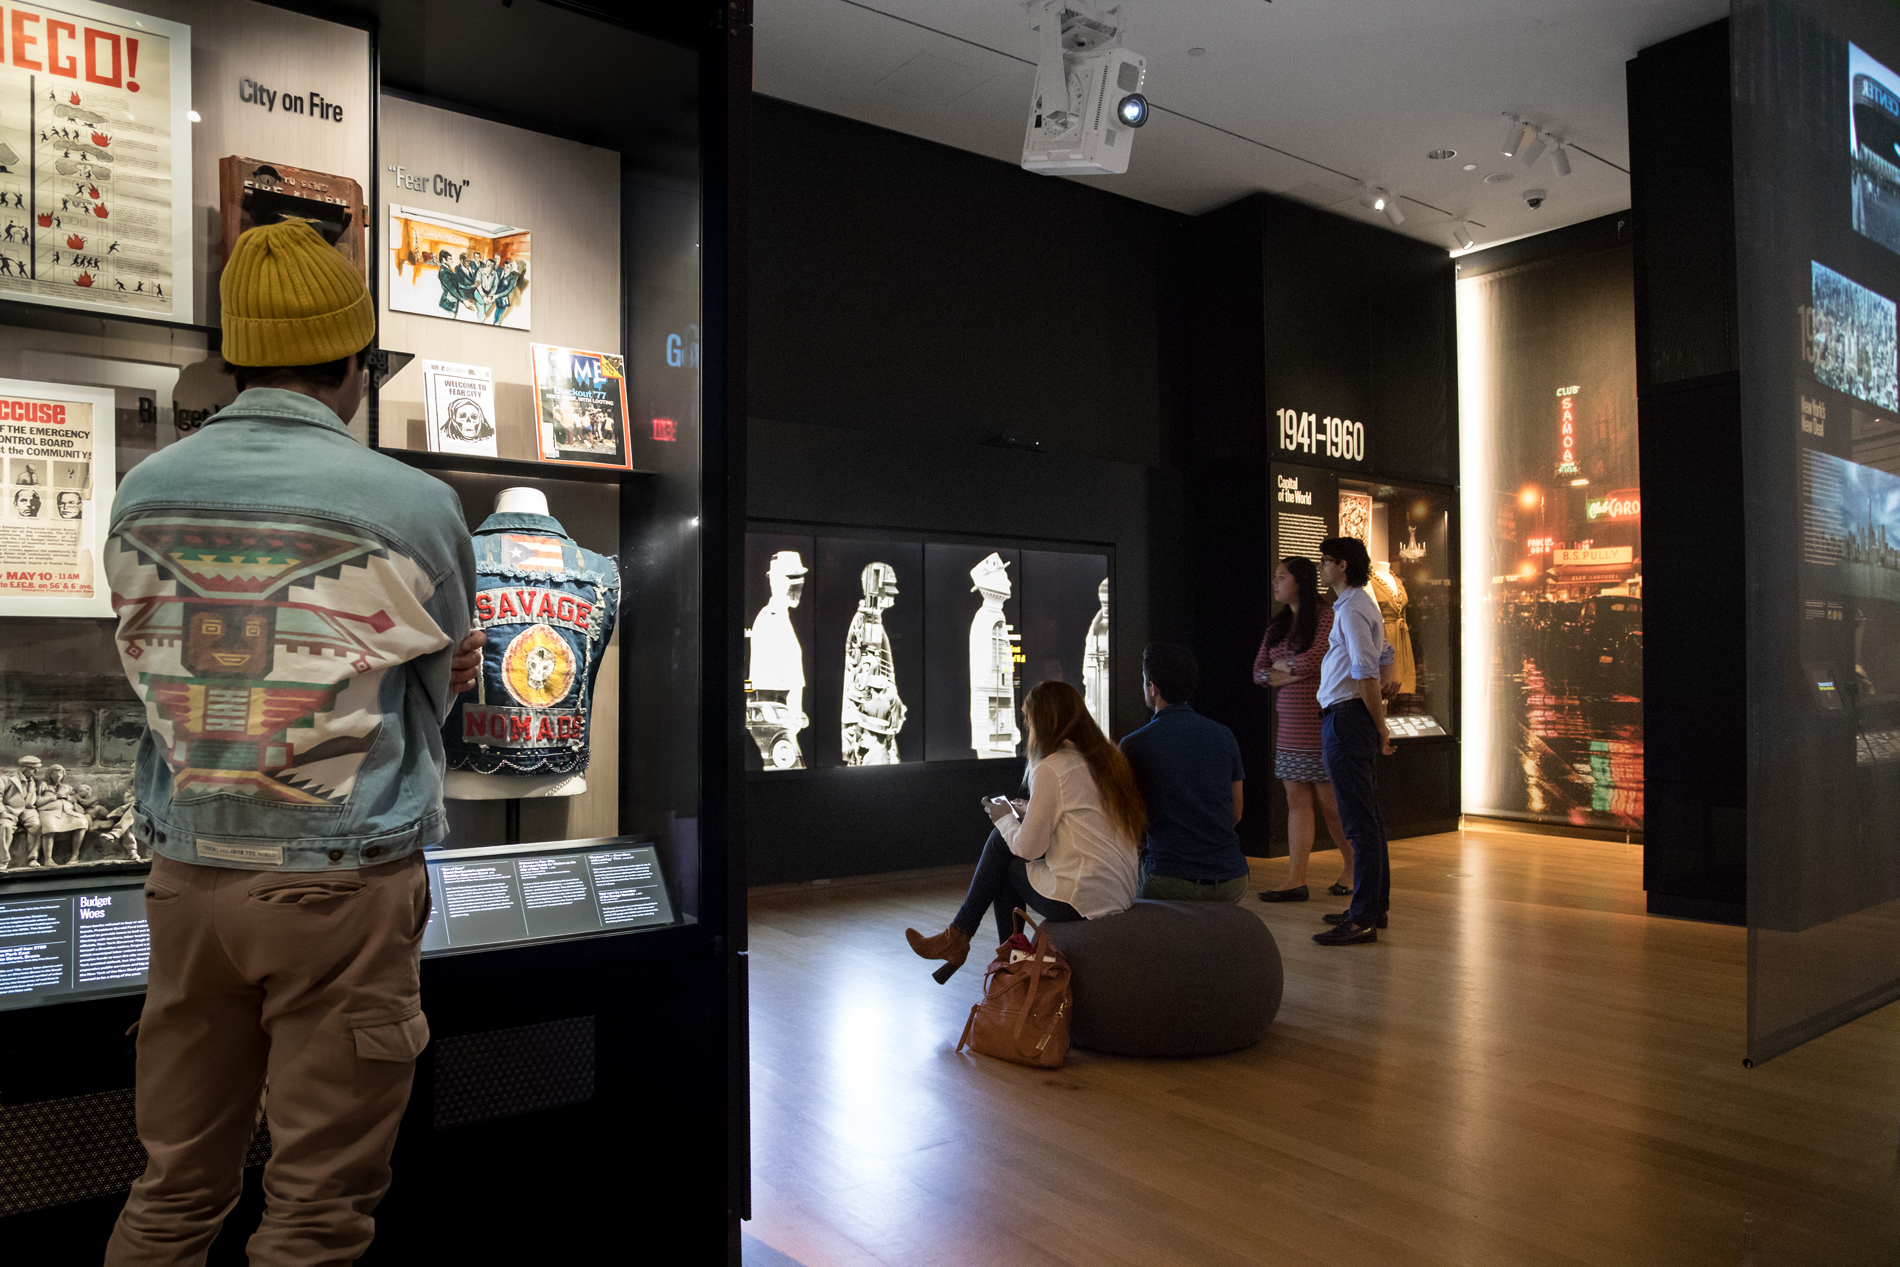 参观者在展览中观察展示的物体和交互式数字组件